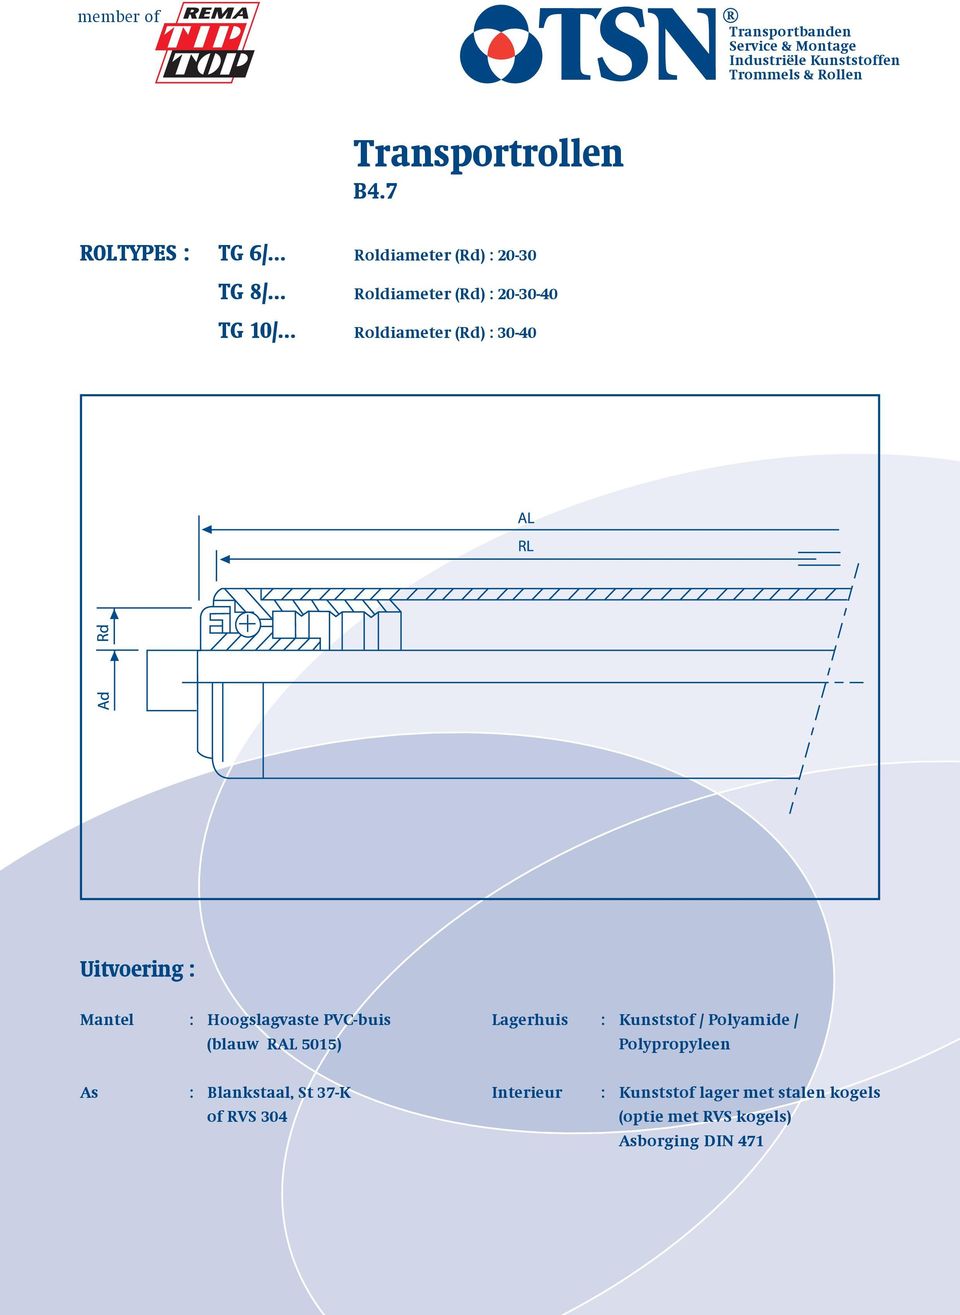 .. Roldiameter (Rd) : 30-40 Mantel : Hoogslagvaste PVC-buis (blauw RAL 5015) Lagerhuis